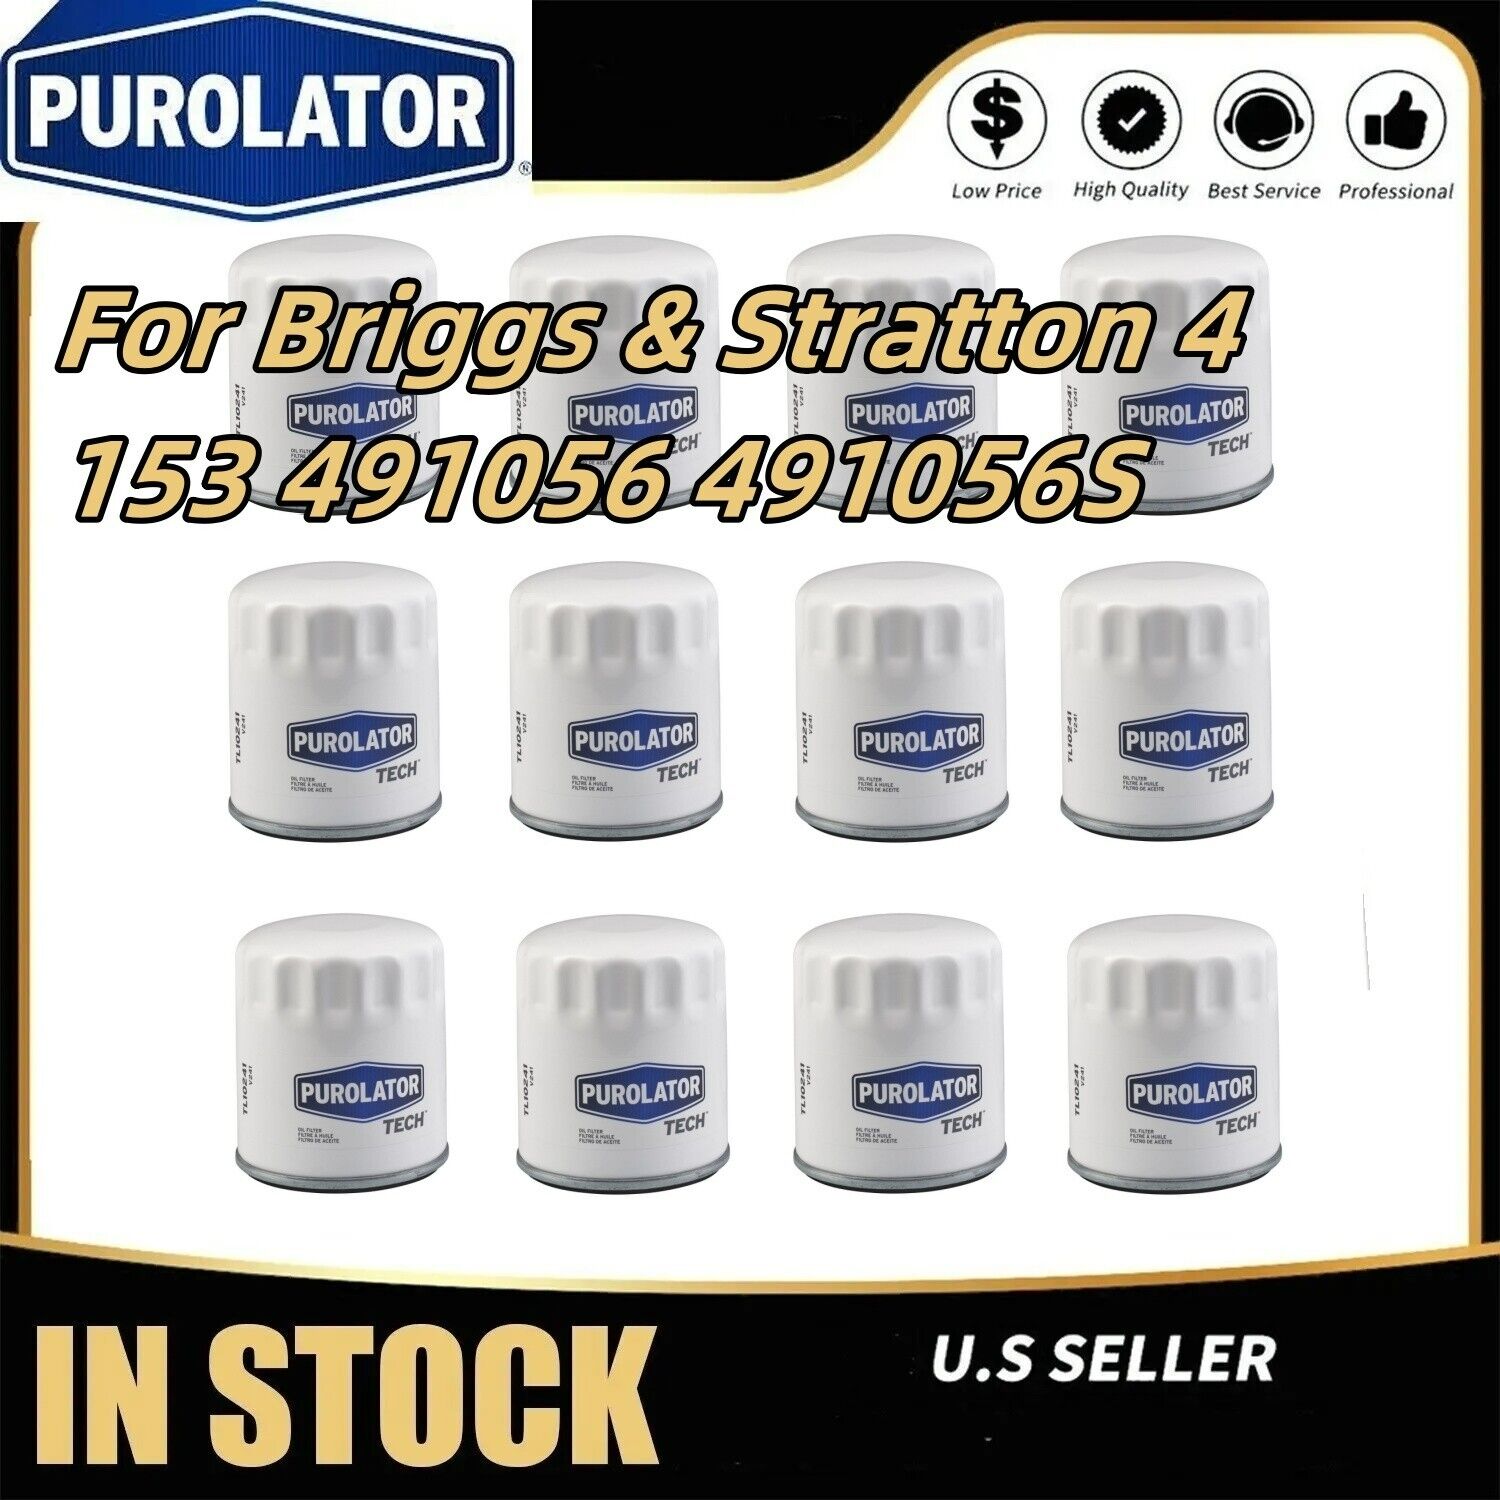 12-Oil Filters For Briggs & Stratton 4153 491056 491056S